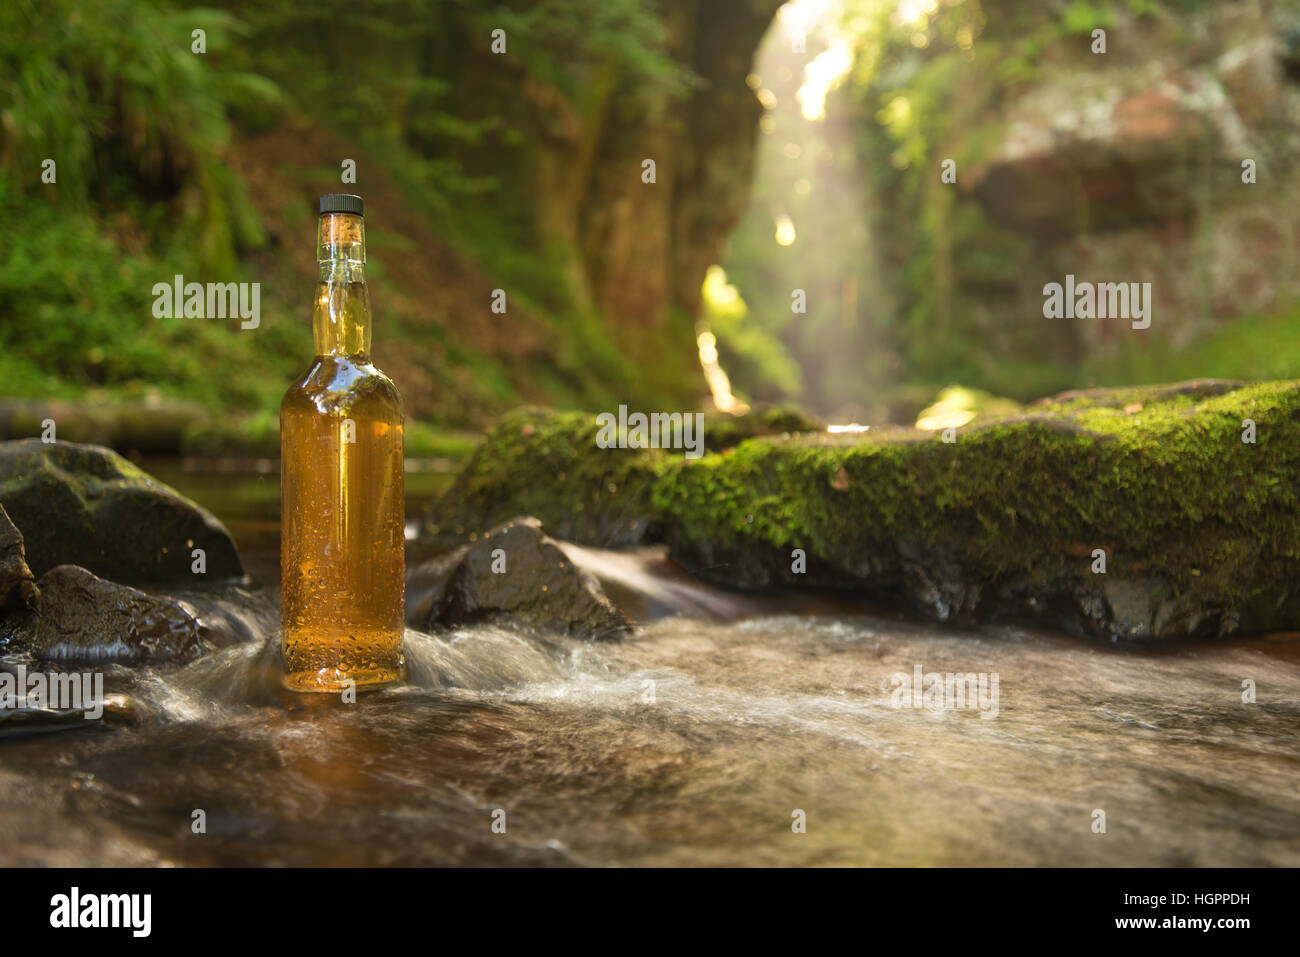 Bottiglia di scottish single malt whisky in tumbling molla fiume alimentato in un bellissimo glen, Scozia. Foto Stock